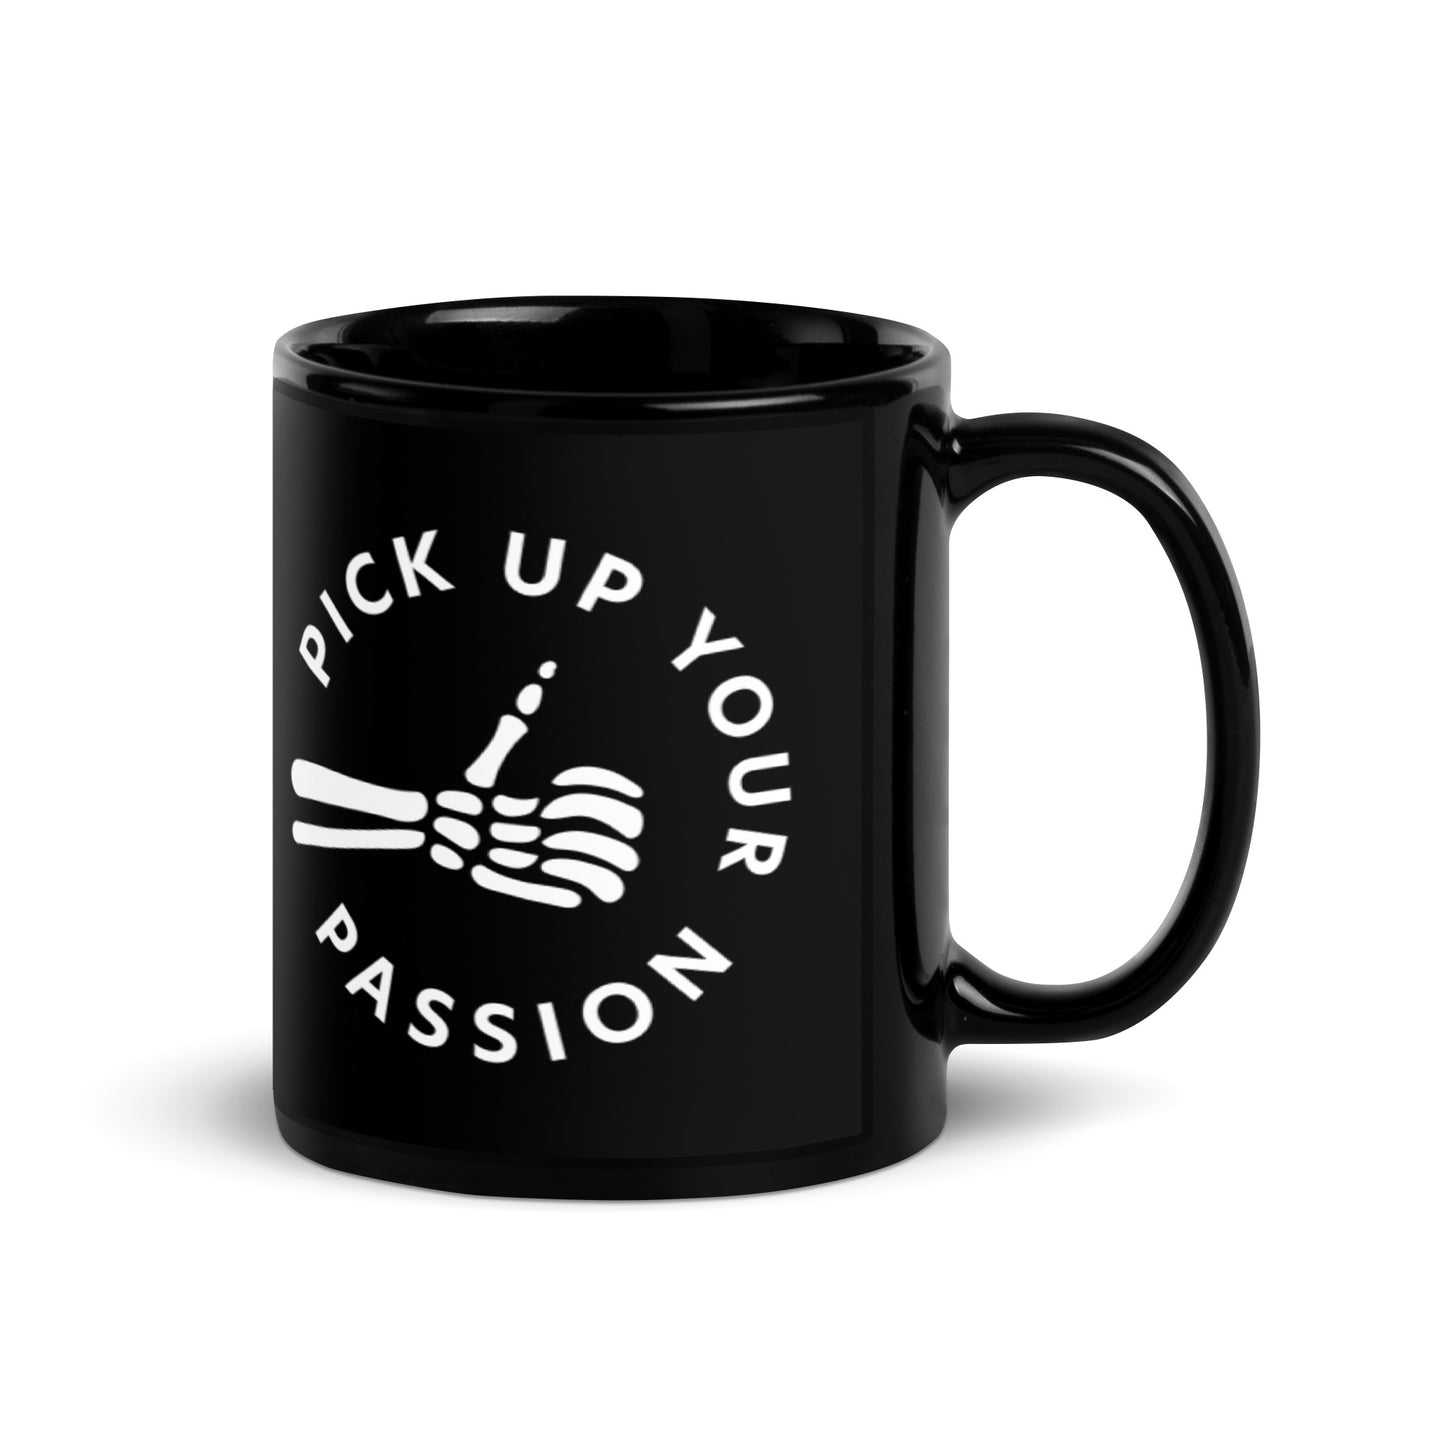 Pick Up Your Passion Mug